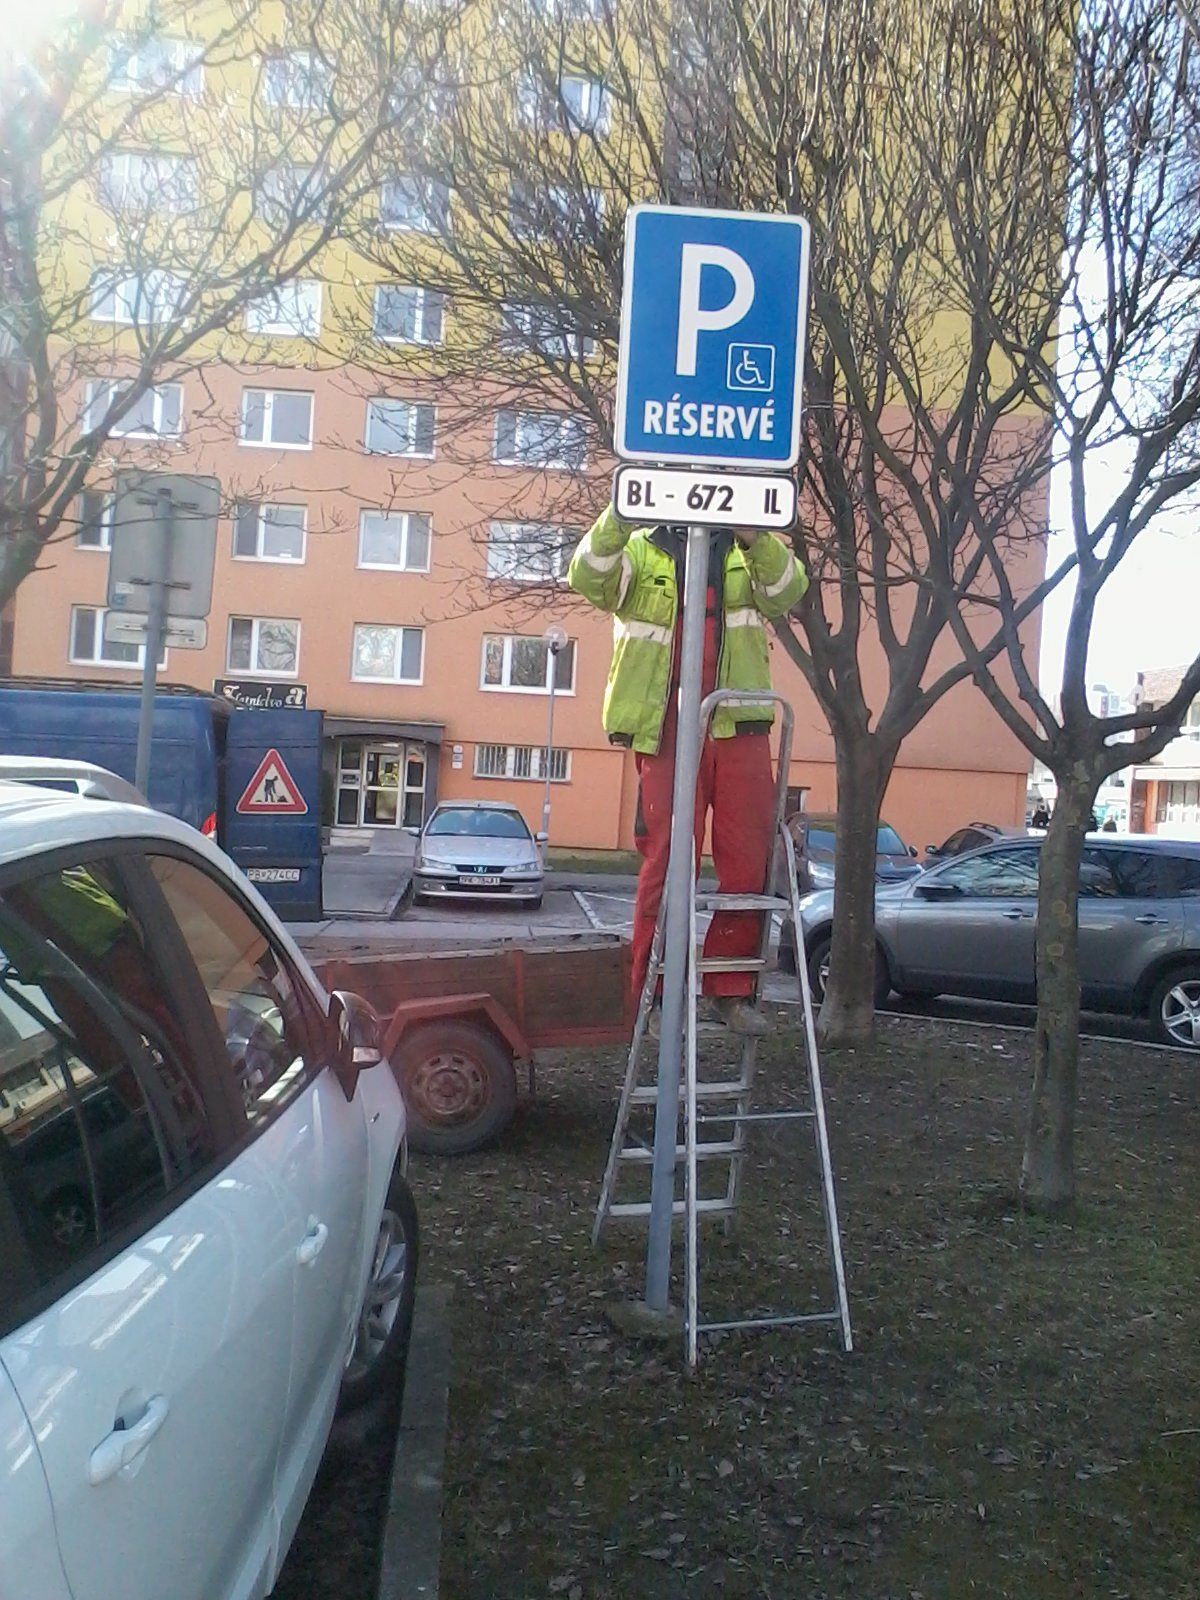 Parkovanie pre ZŤP s vyznačenou ŠPZ, Petržalka, Bratislava |  Odkazprestarostu.sk